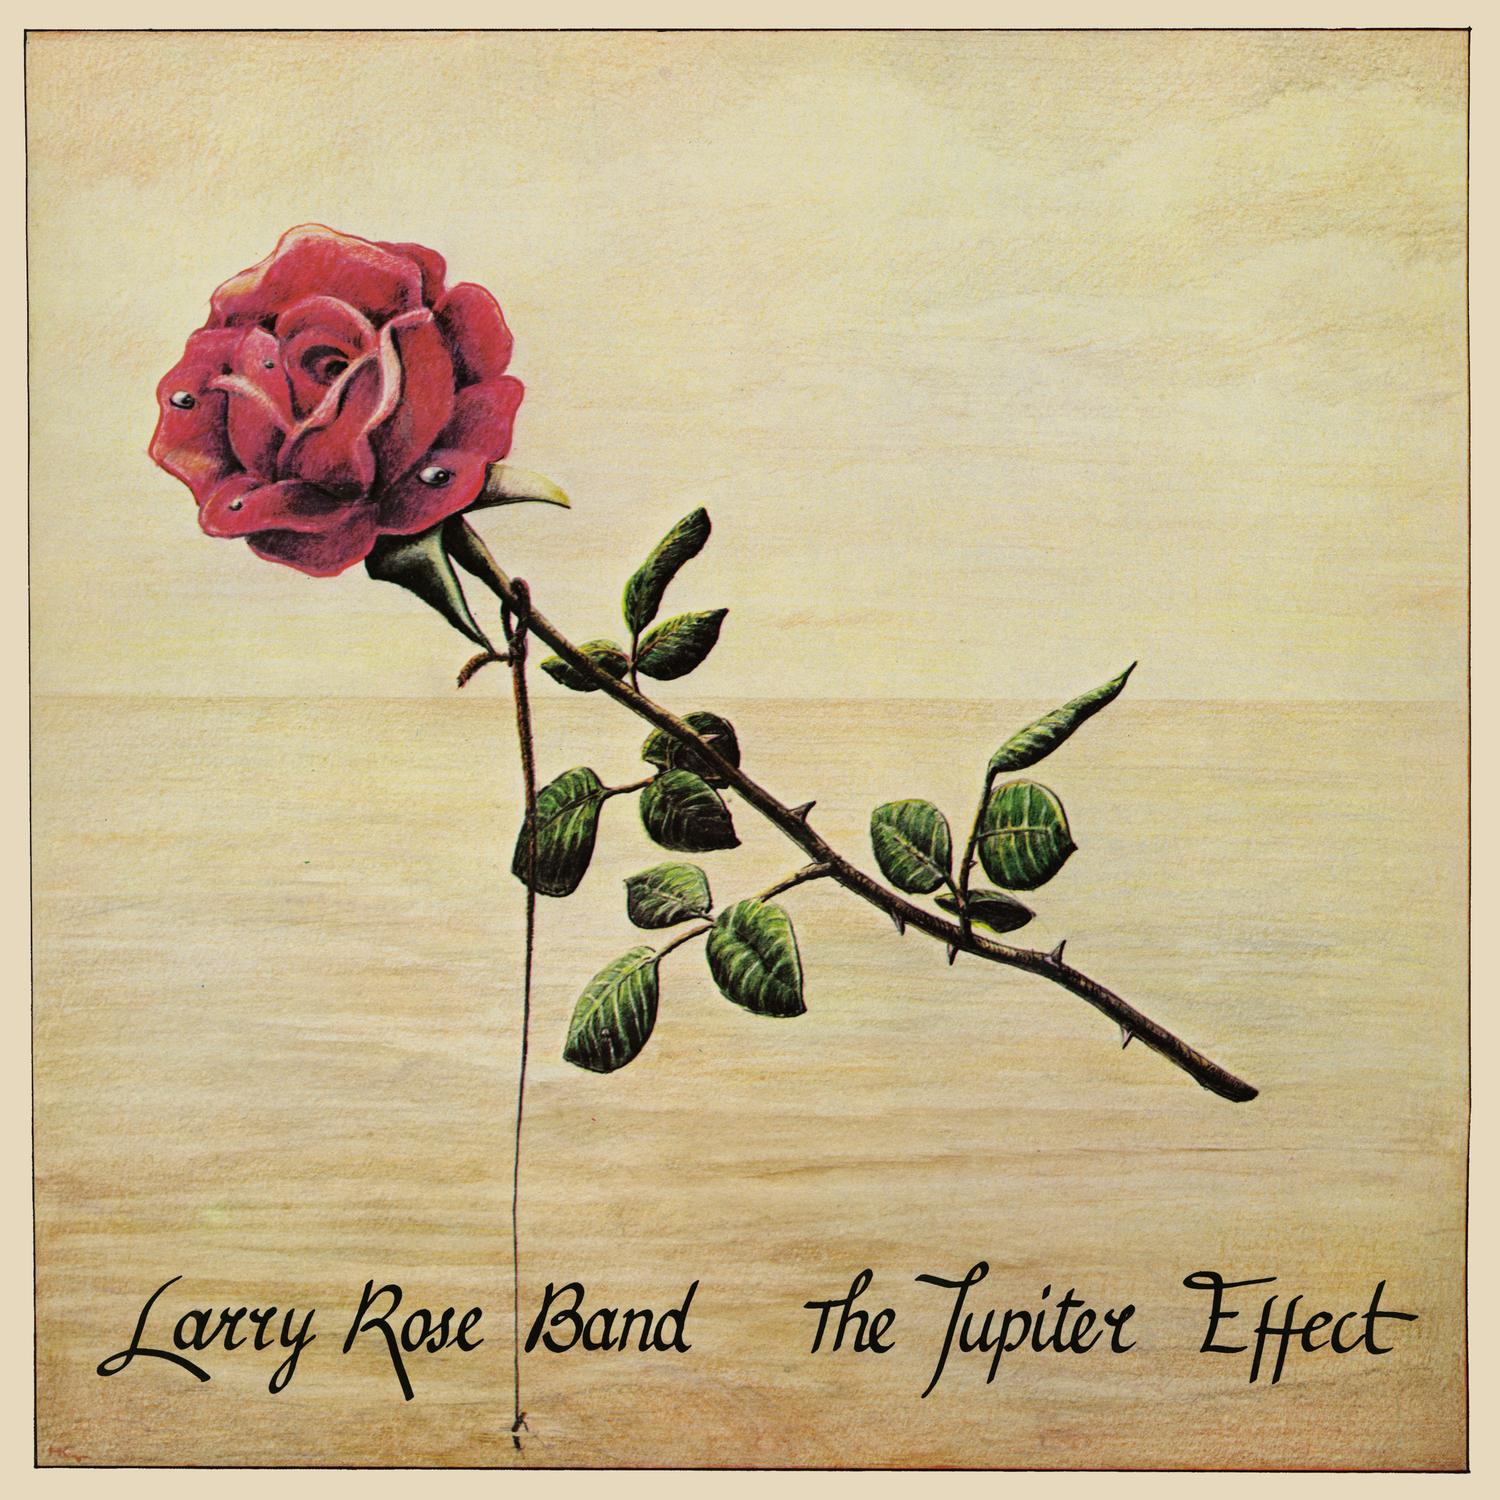 The Jupiter Effect / Larry Rose Band